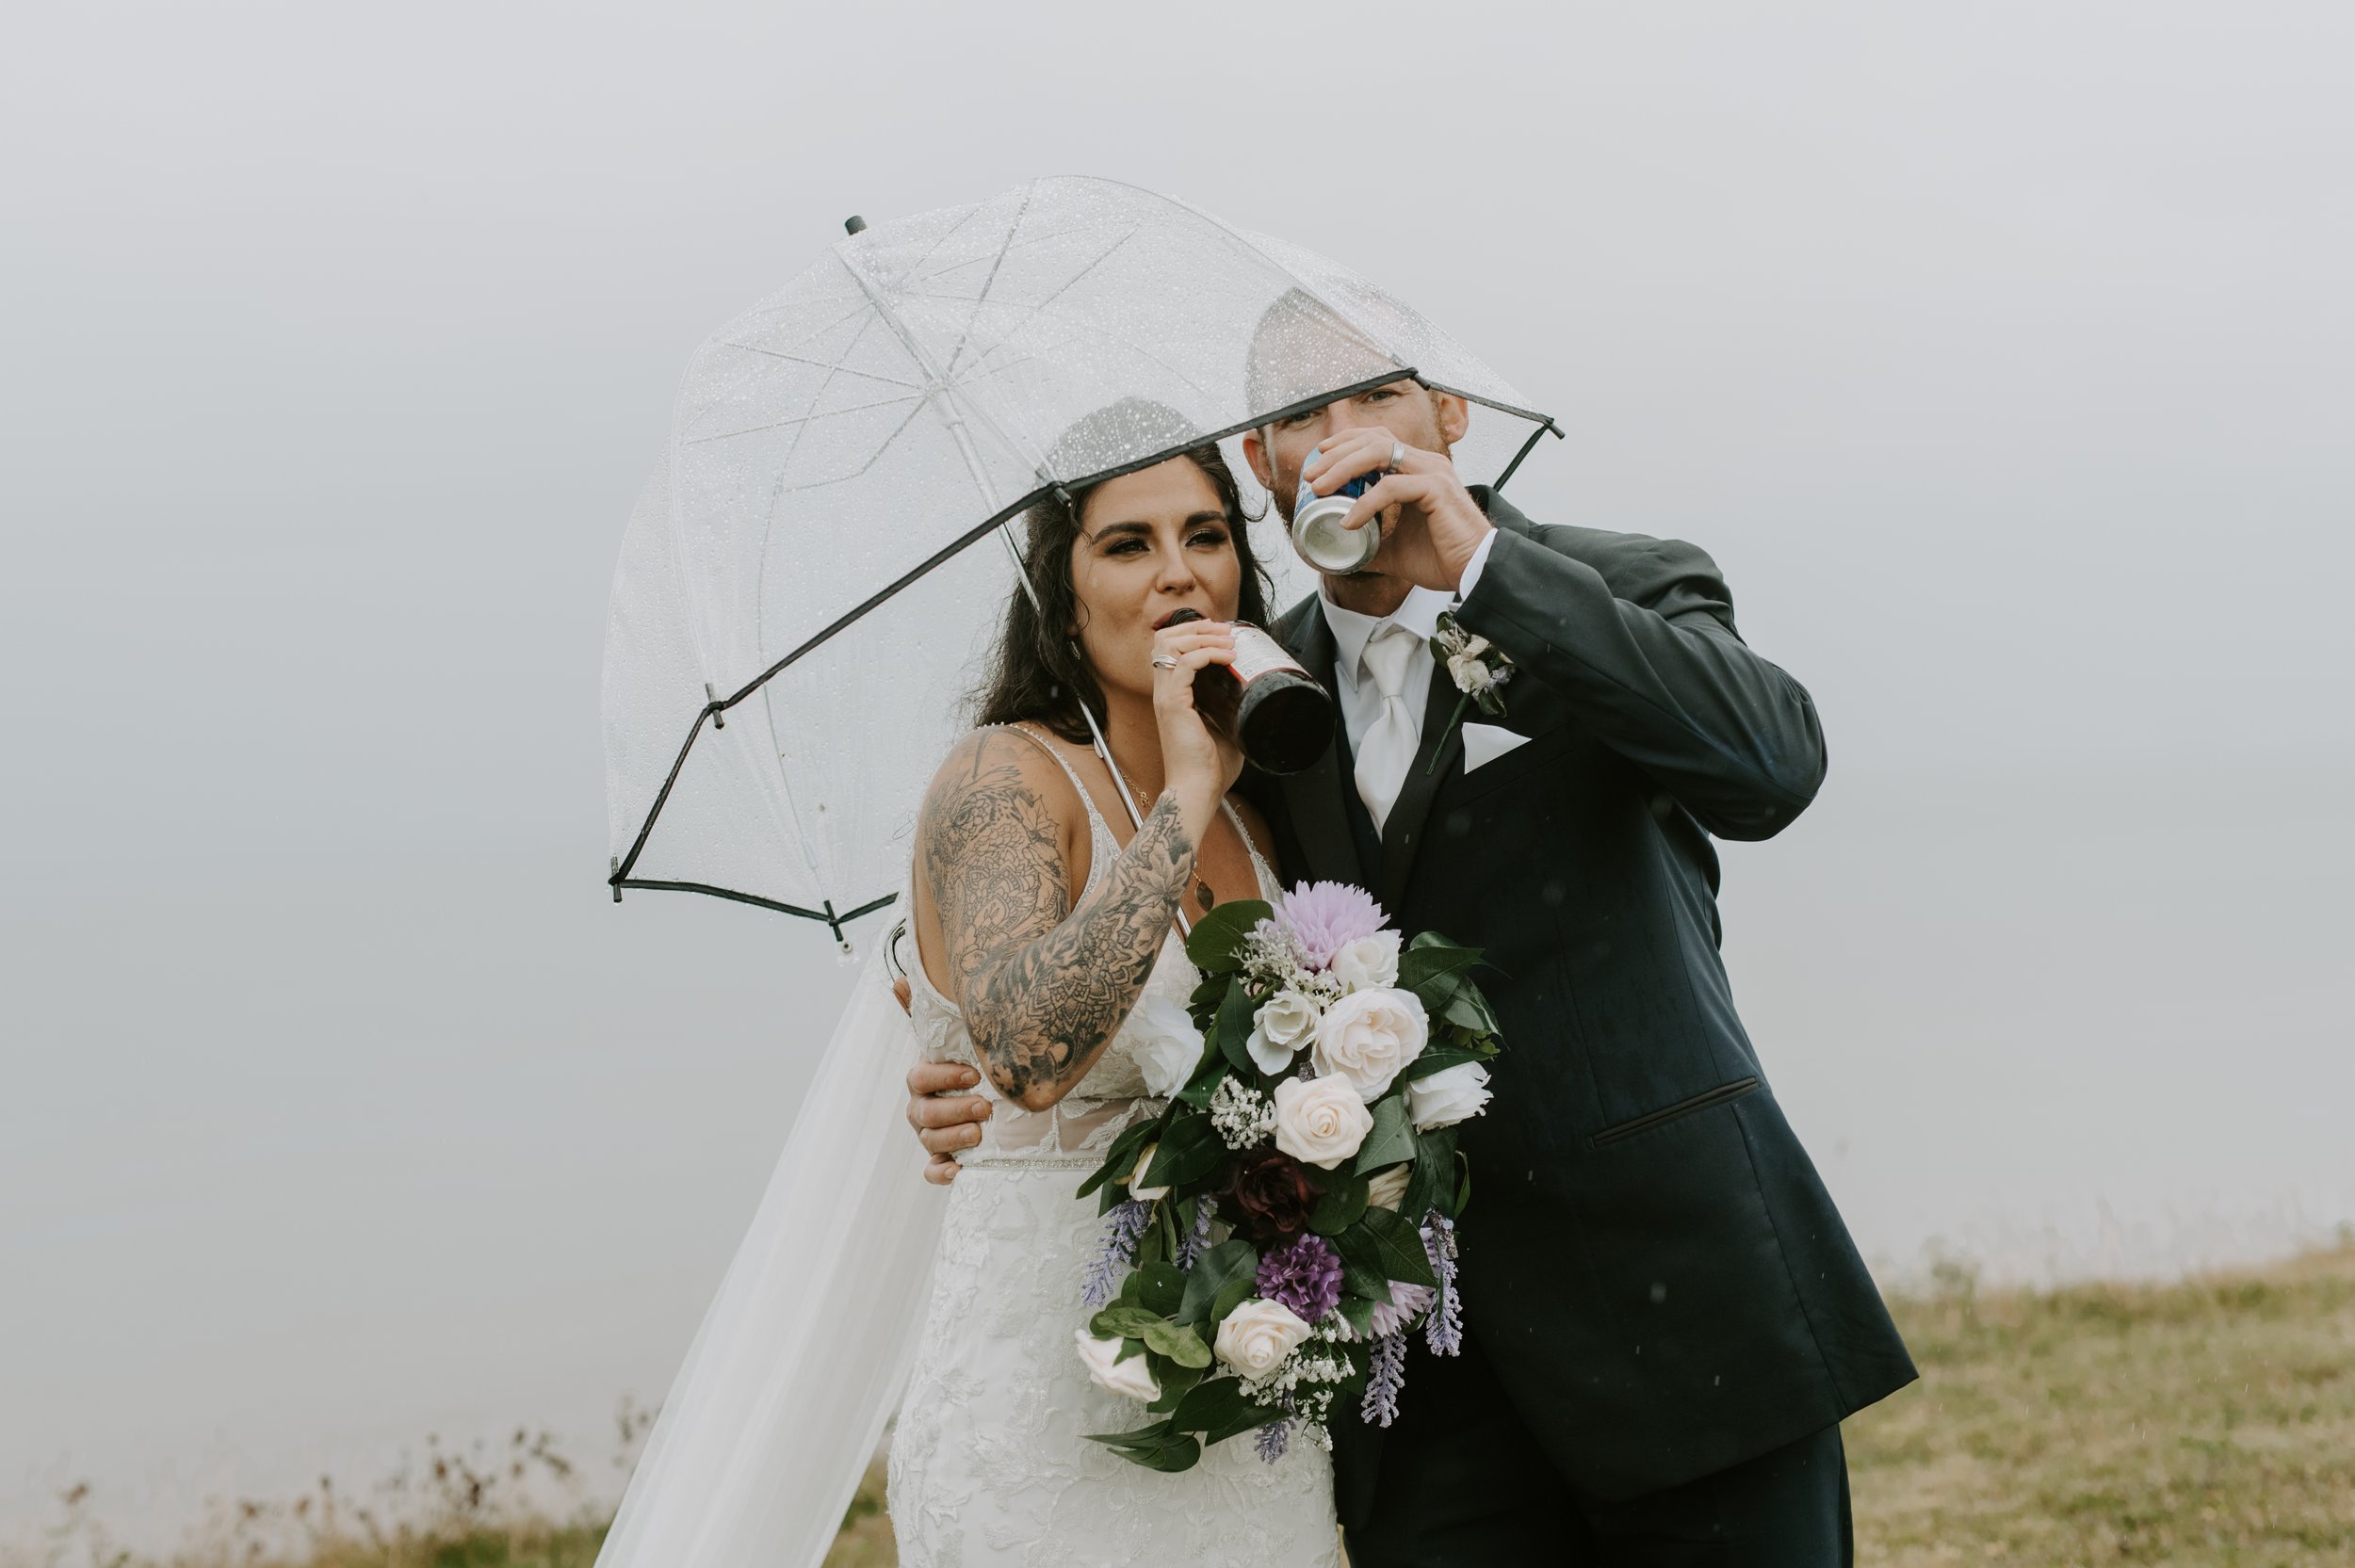 PEI Wedding photographer - Michaela Bell Photography